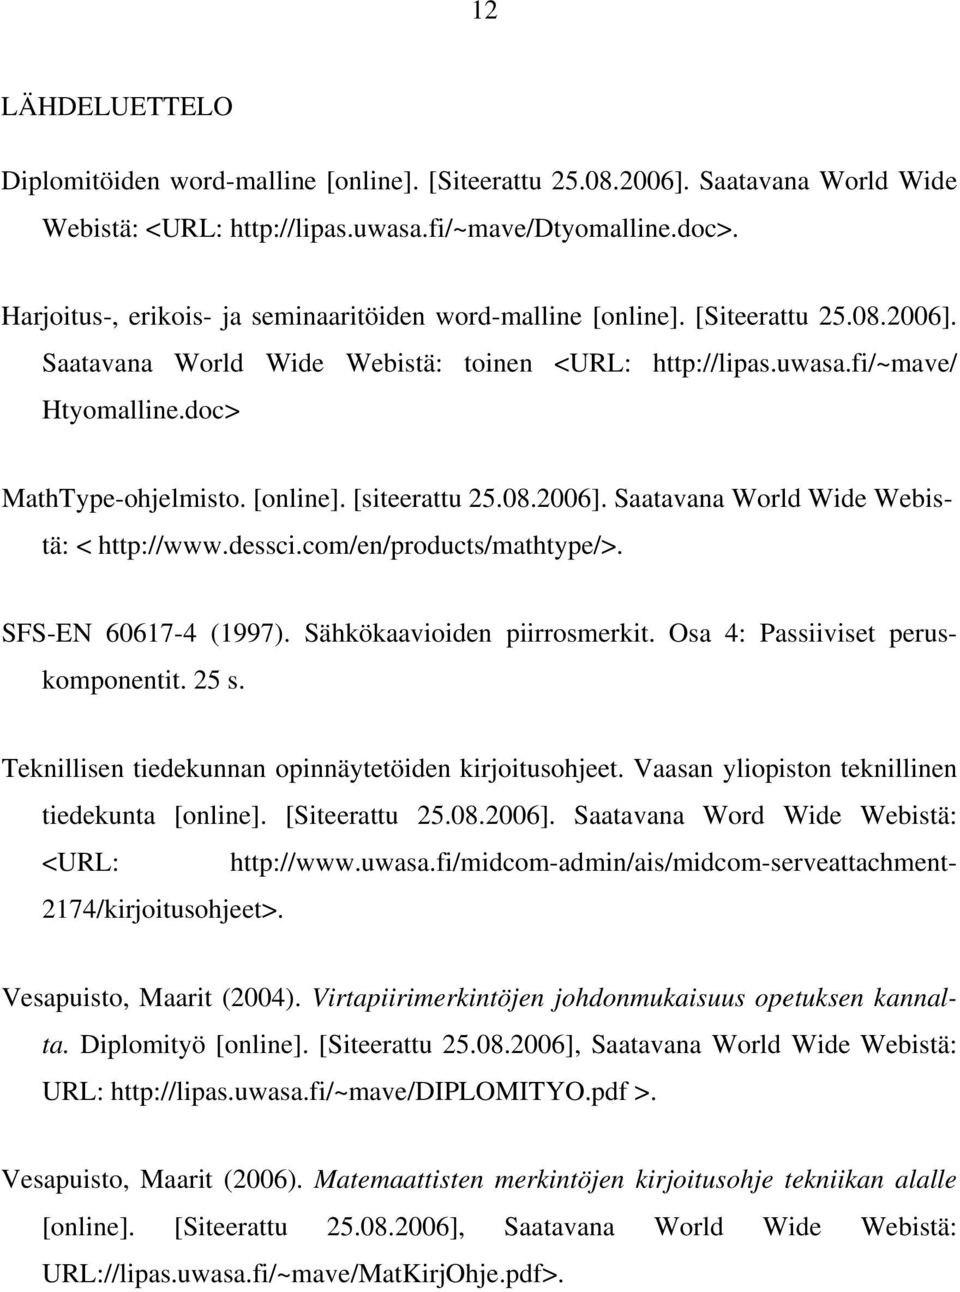 [online]. [siteerattu 25.08.2006]. Saatavana World Wide Webistä: < http://www.dessci.com/en/products/mathtype/>. SFS-EN 60617-4 (1997). Sähkökaavioiden piirrosmerkit.